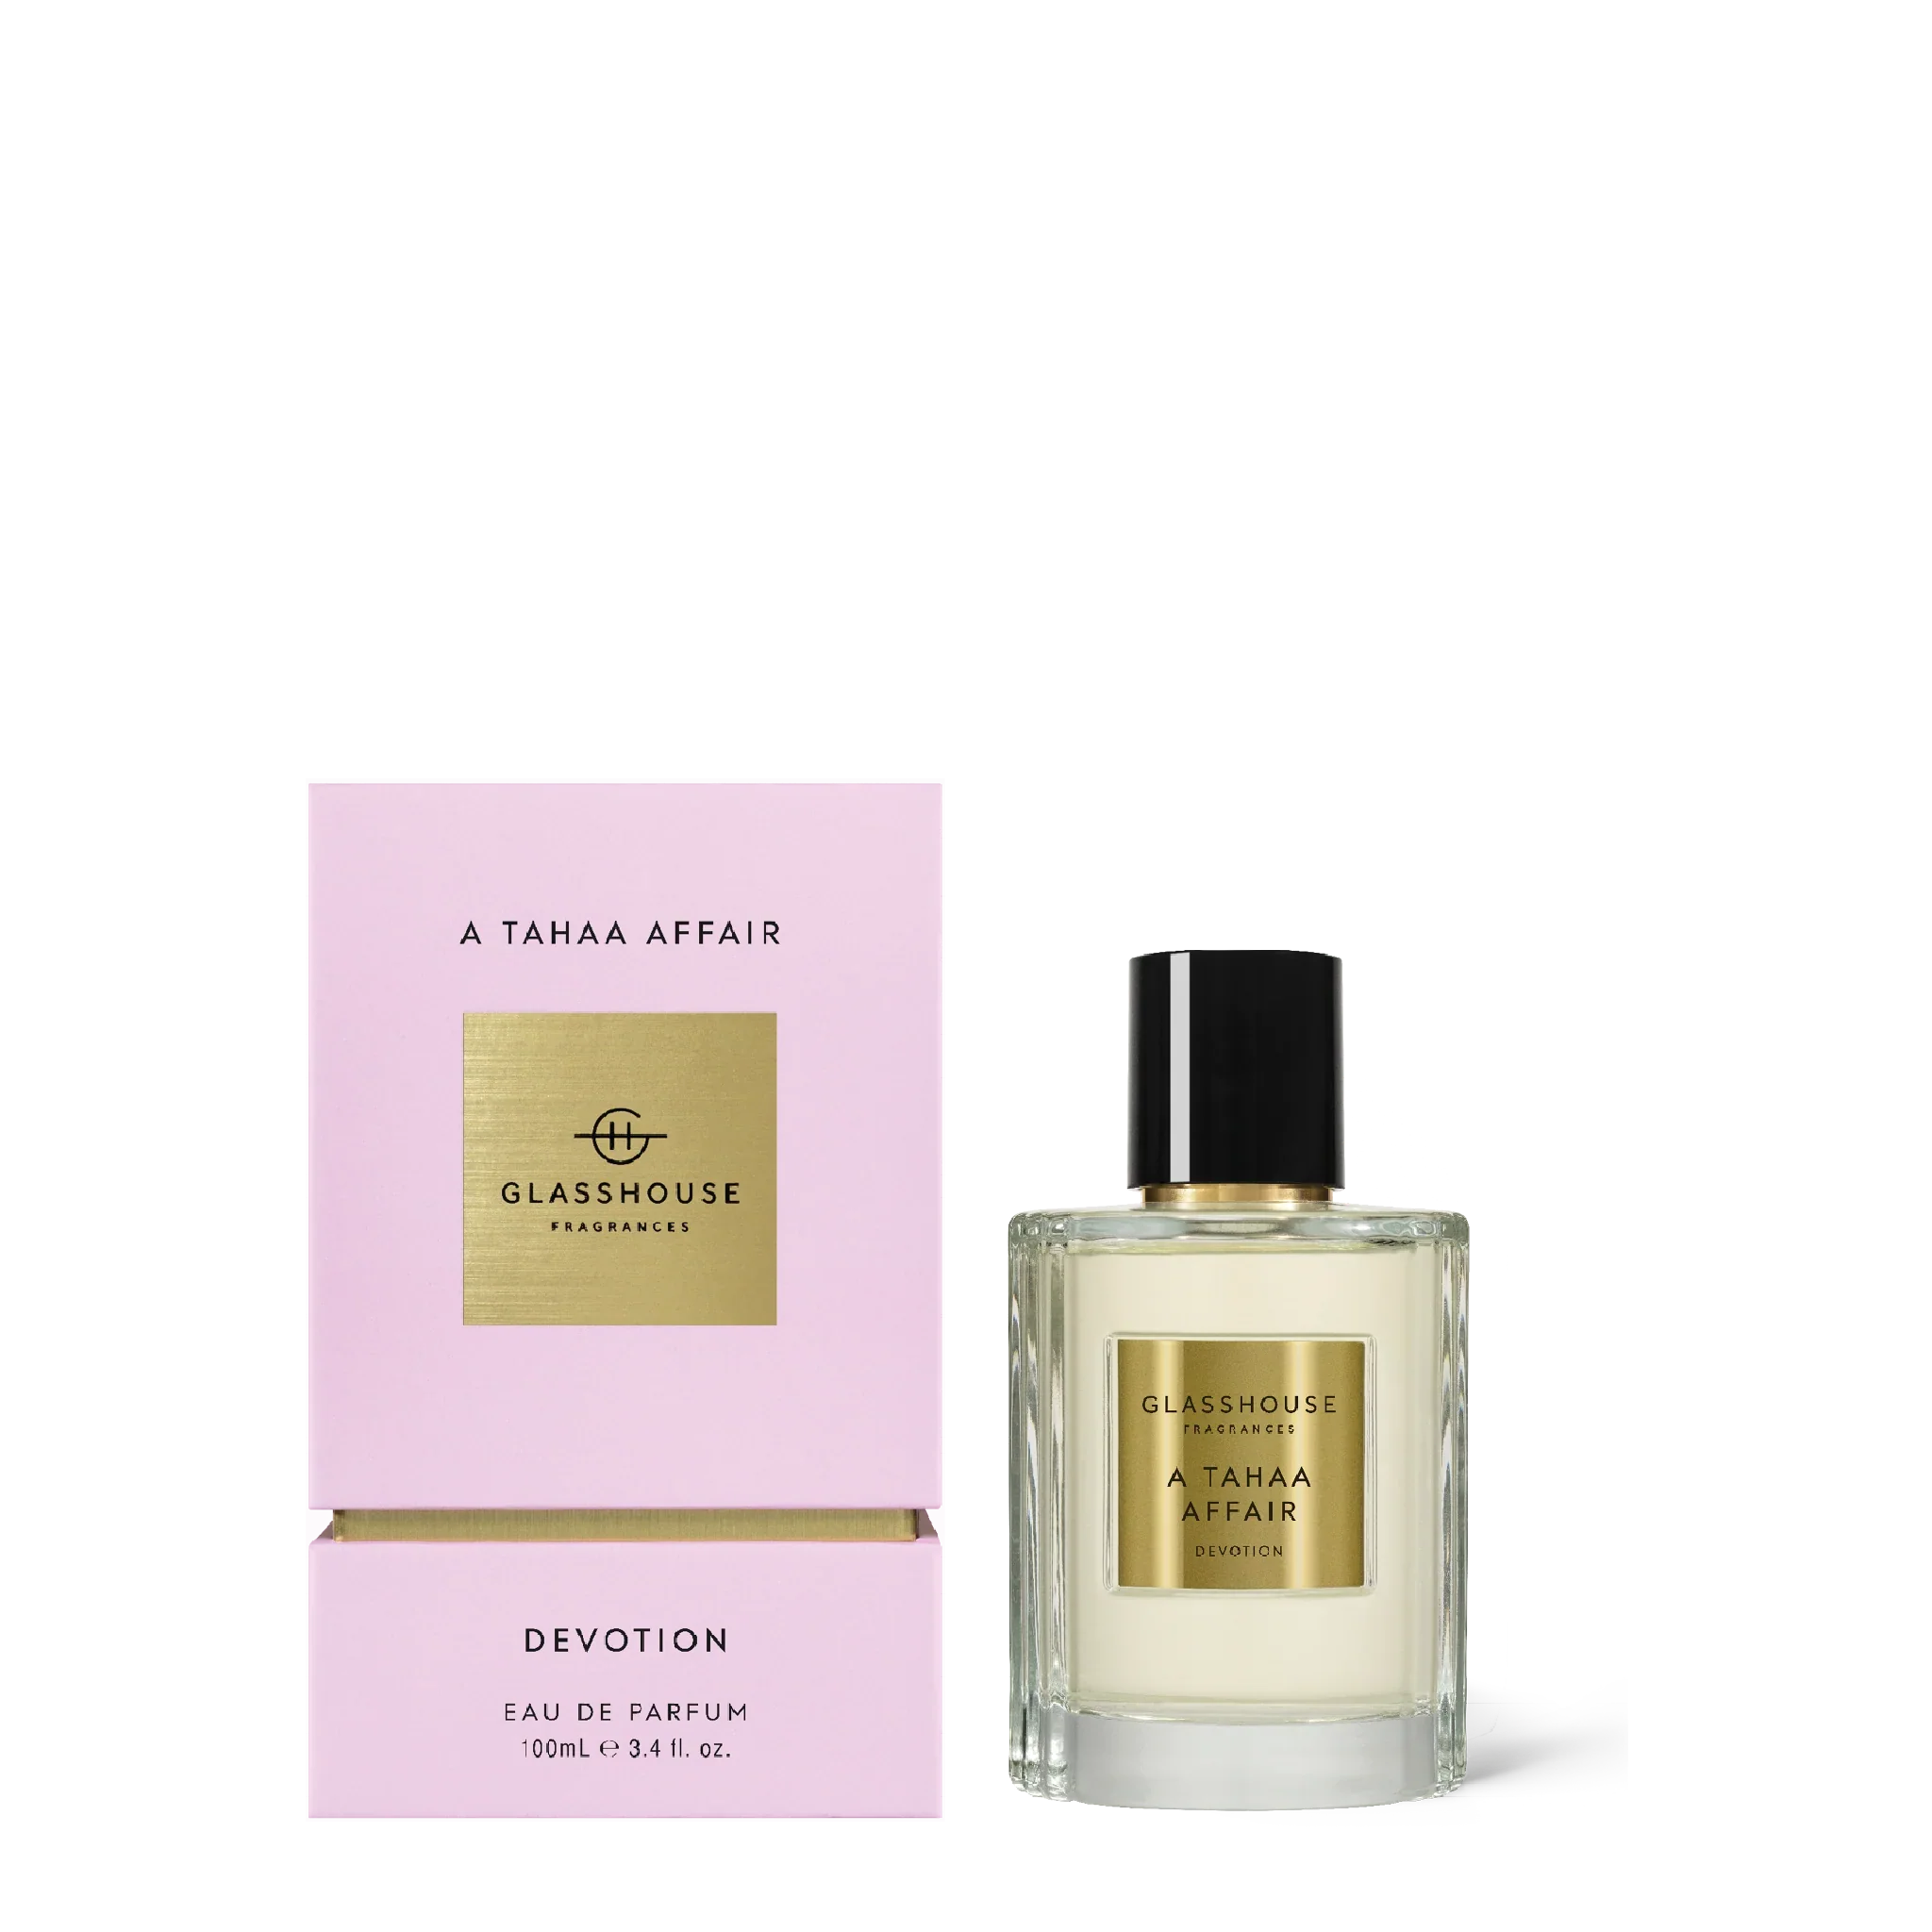 A Tahaa Affair Devotion - Butterscotch Caramel & Jasmine 100ml Eau de Parfum